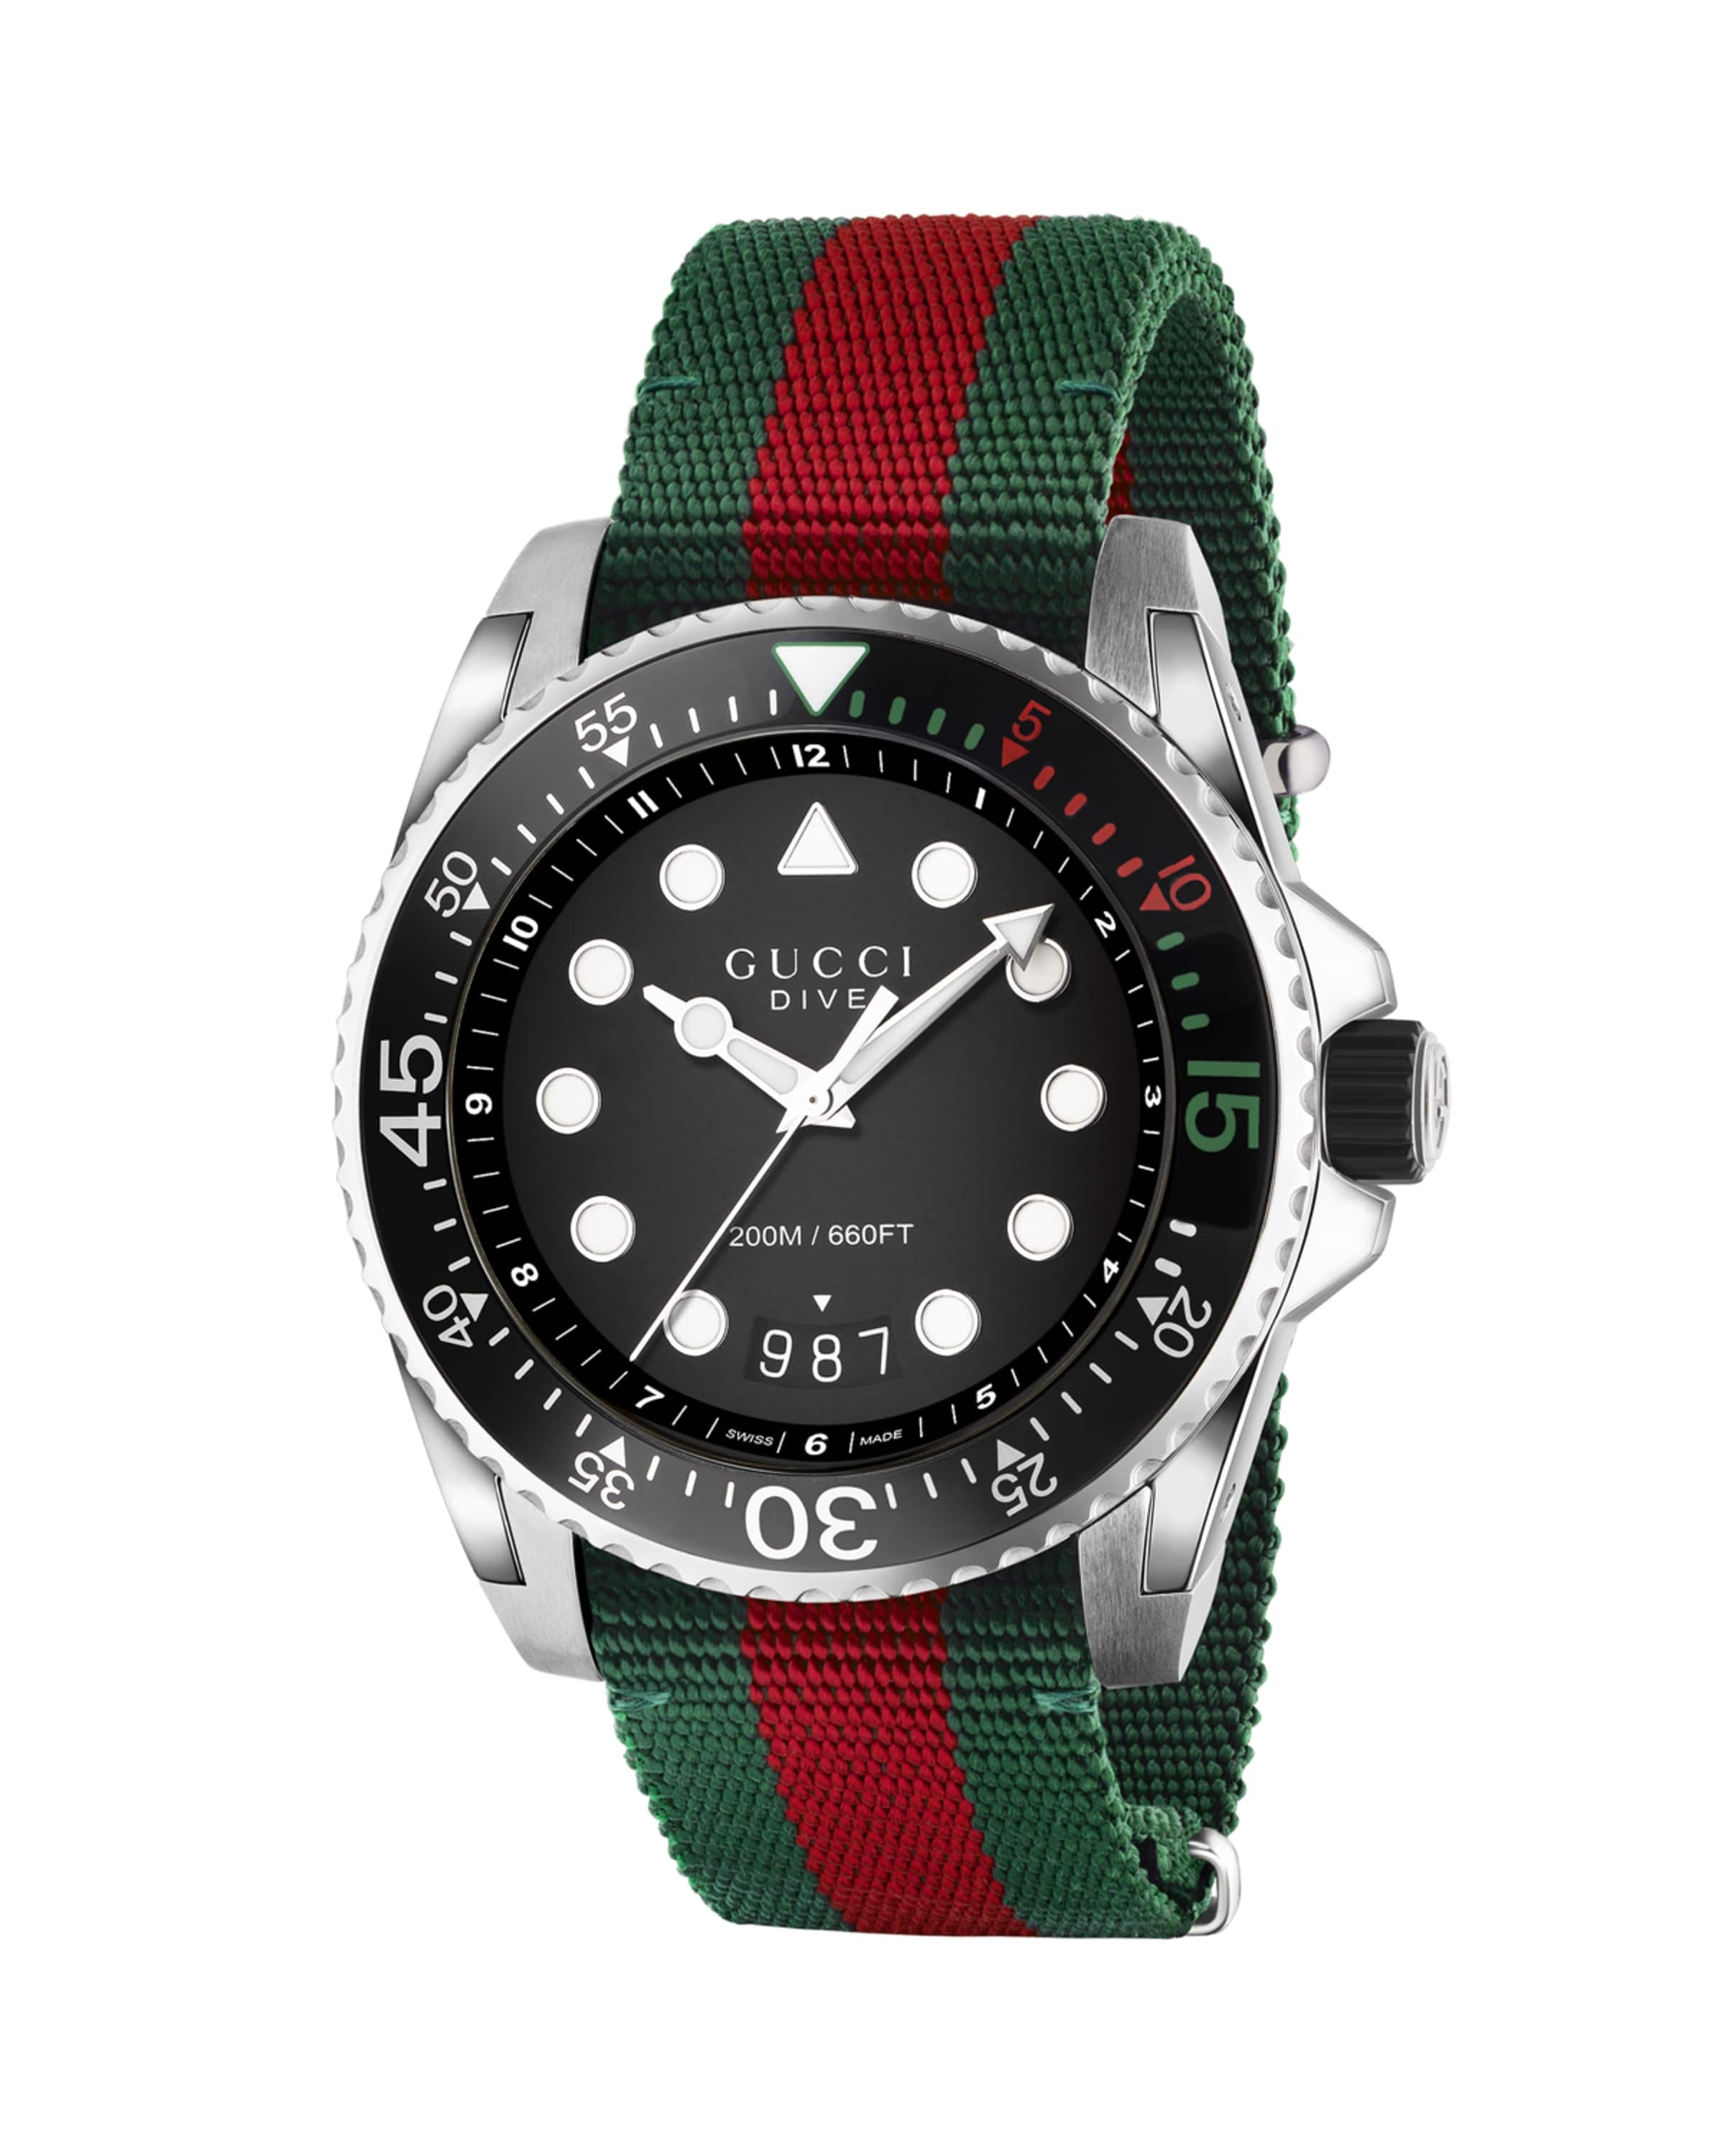 45mm Gucci Dive Watch w/ Nylon Web Strap - 1